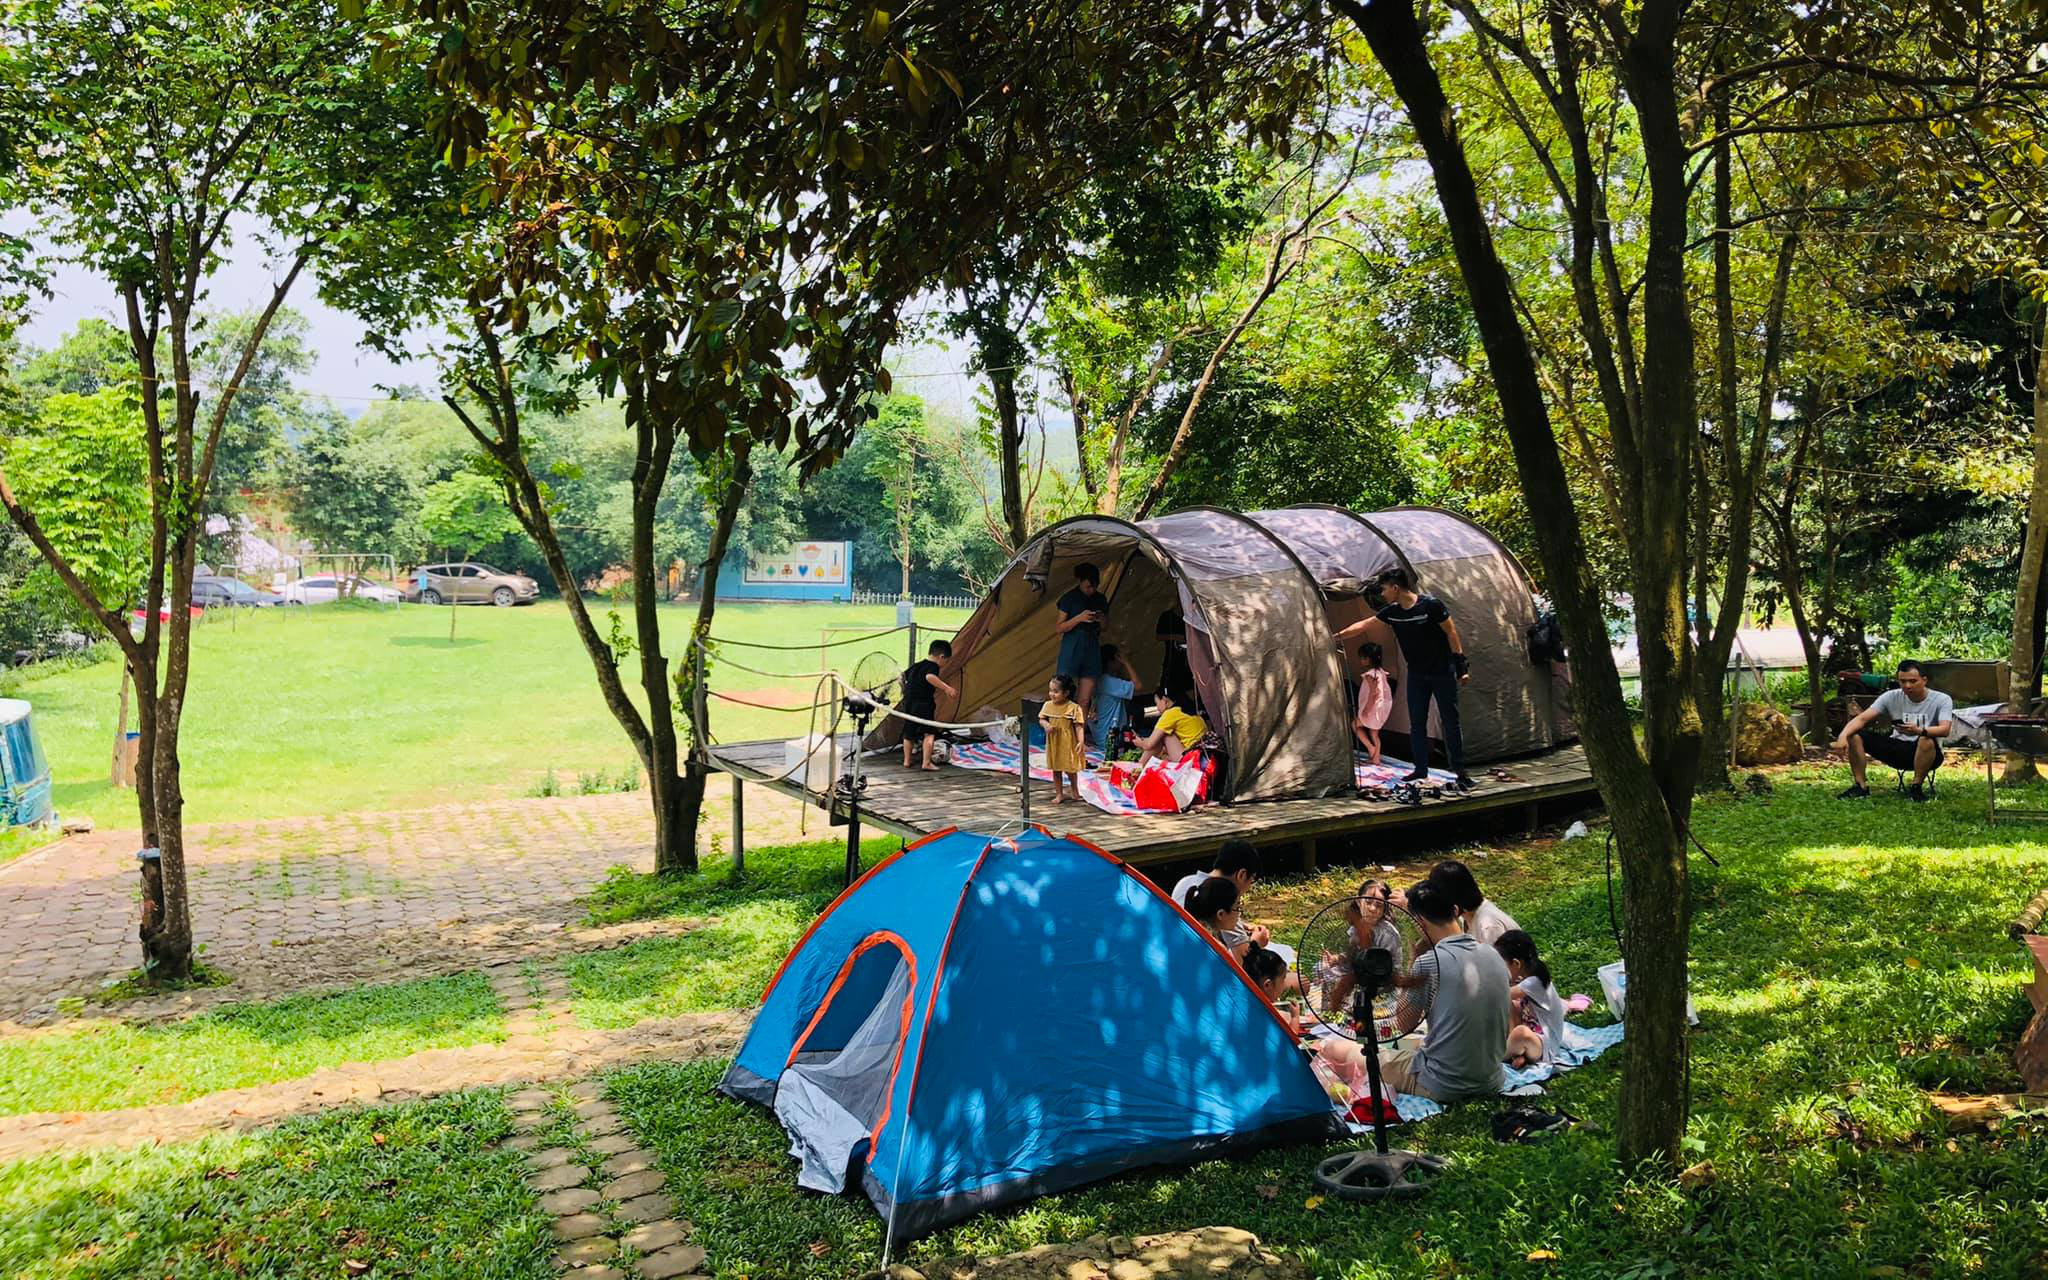 Hà Nội: Mách 3 địa điểm cắm trại cực nổi có dịch vụ trọn gói 2N1Đ cho gia đình 4 người, giá không quá 2 triệu đồng 